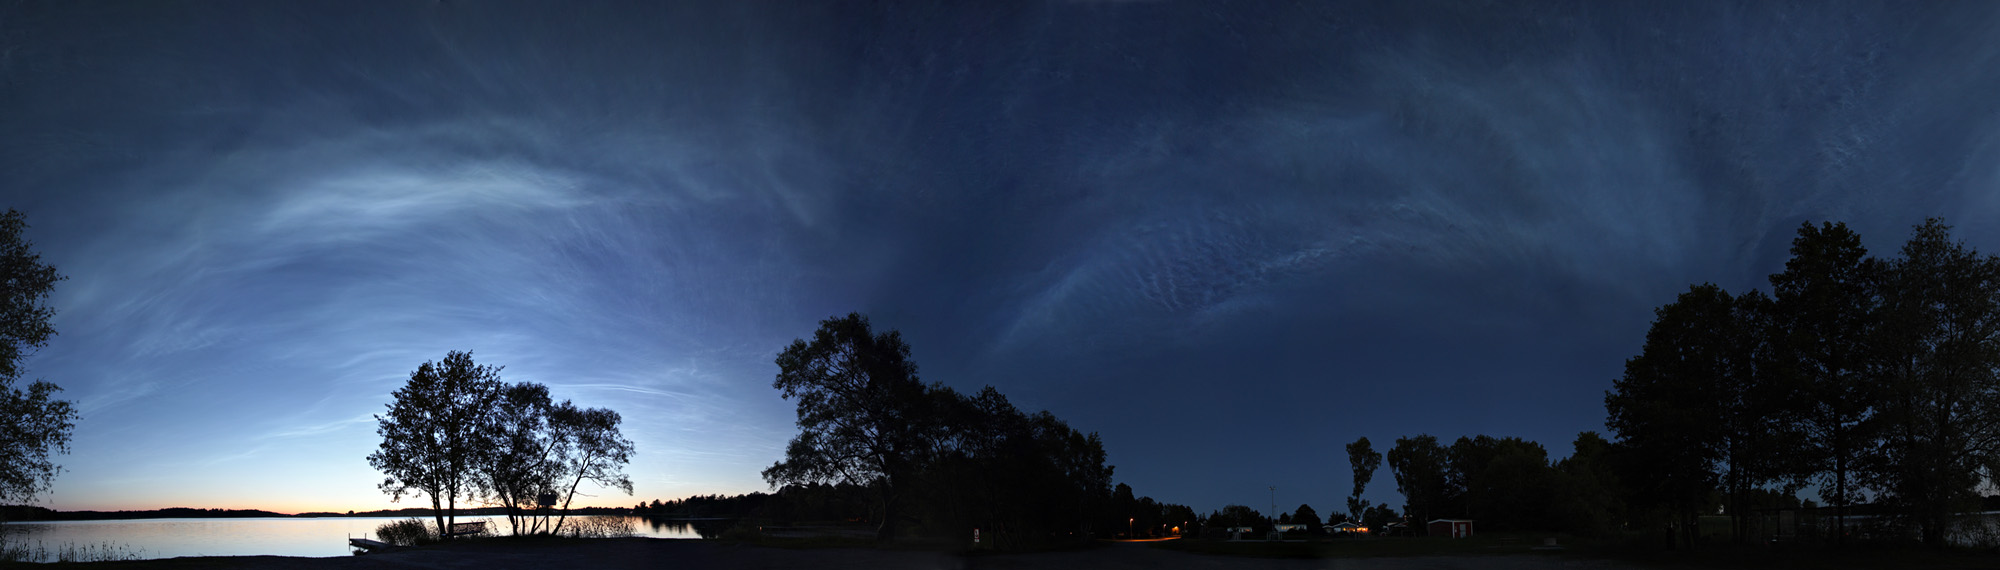 Links im Bild ist steht eine Baumgruppe, dahinter leuchten Nachtwolken. Der rechte Bildteil ist dunkel.